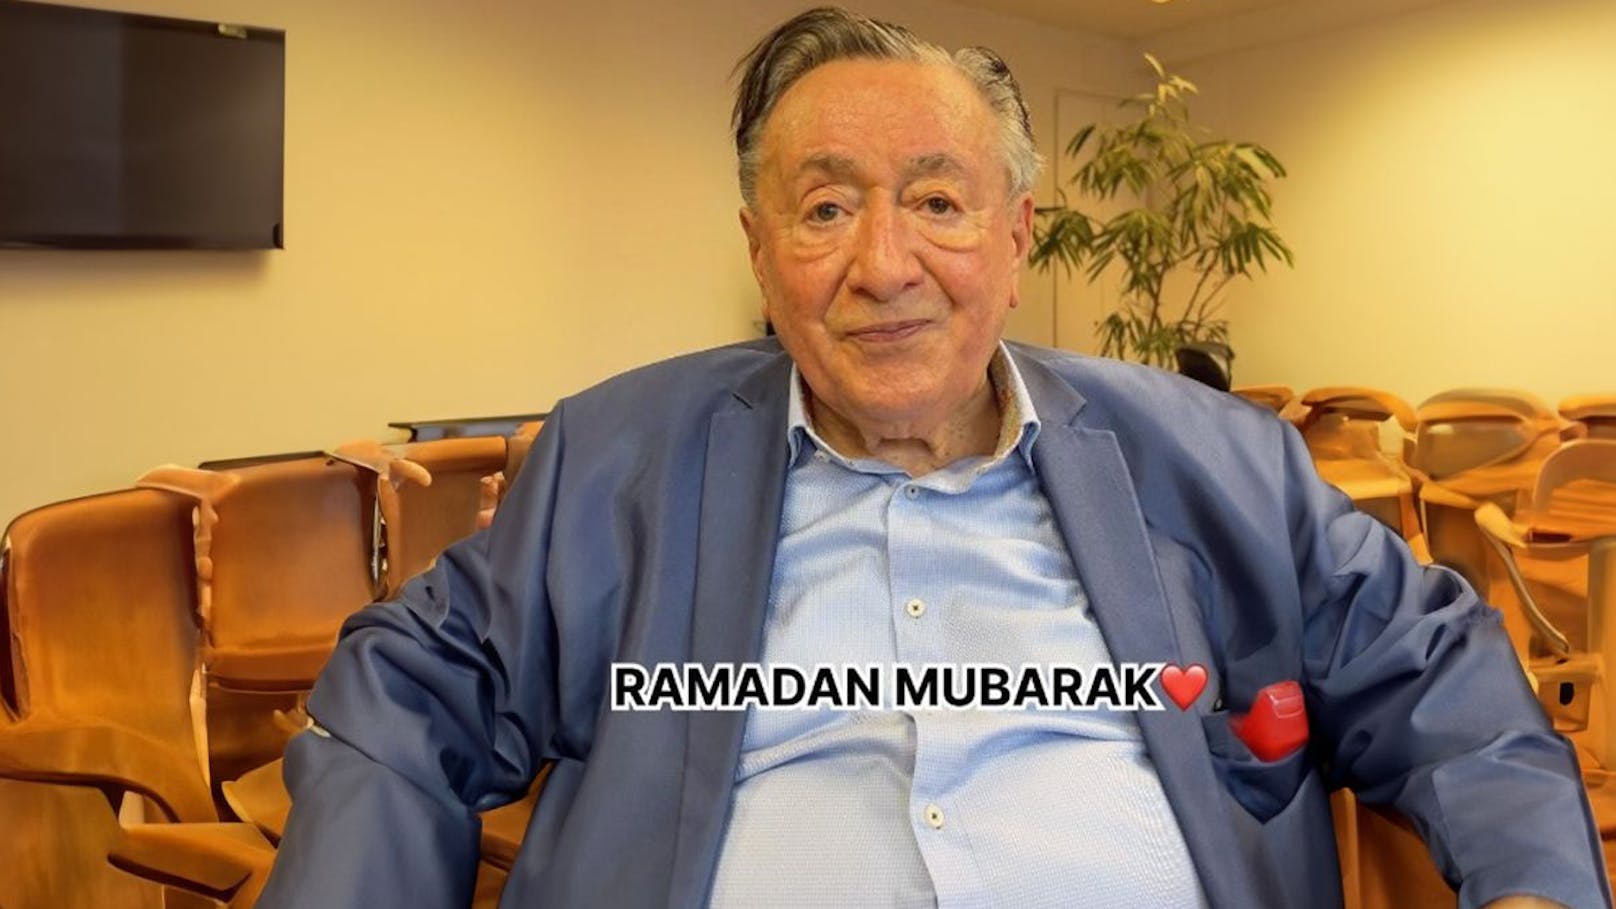 "Habibi": Richard Lugner wünscht "Ramadan Mubarak"